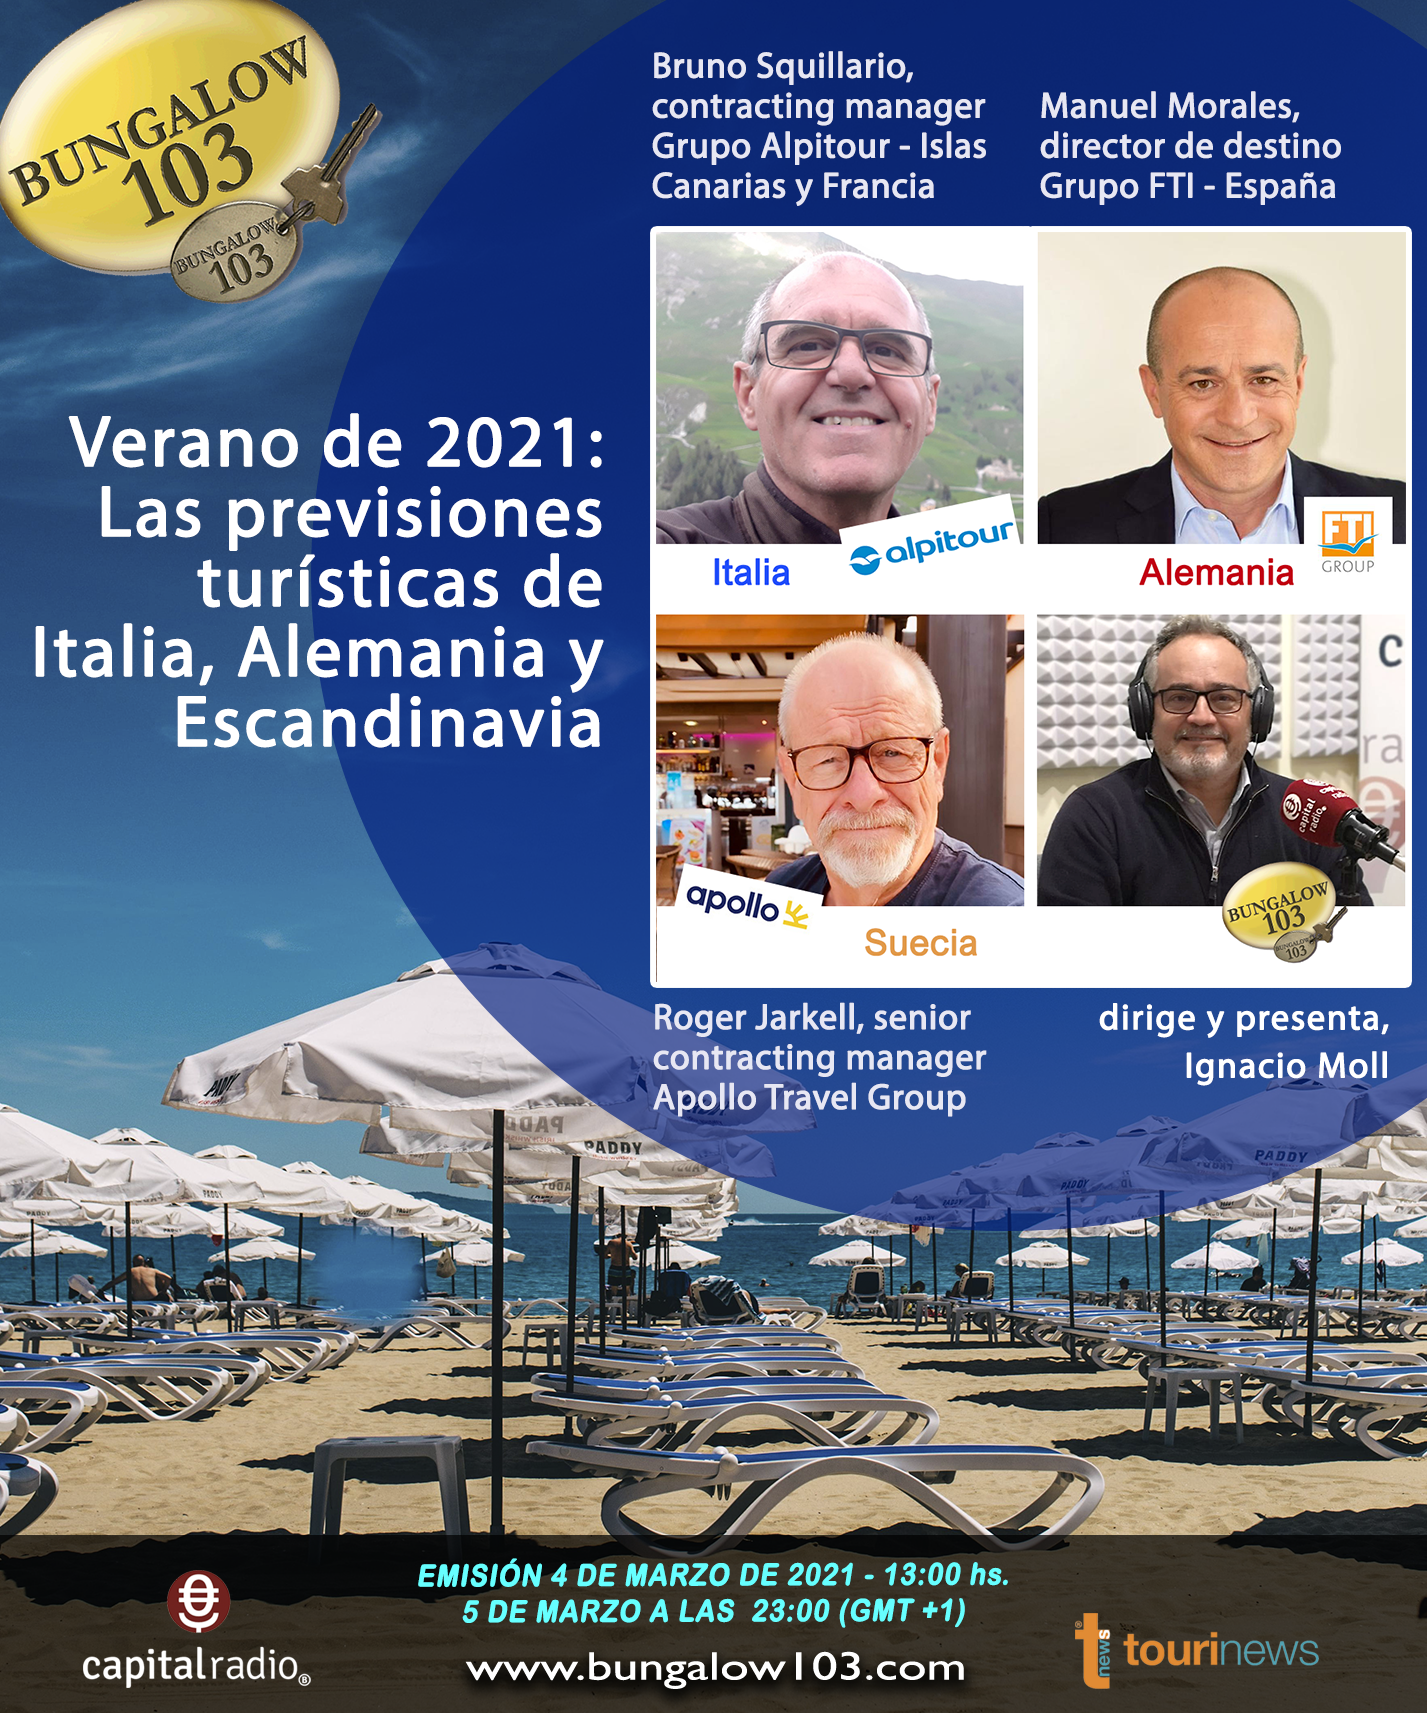 Verano de 2021: Las previsiones turísticas de Italia, Alemania y Escandinavia